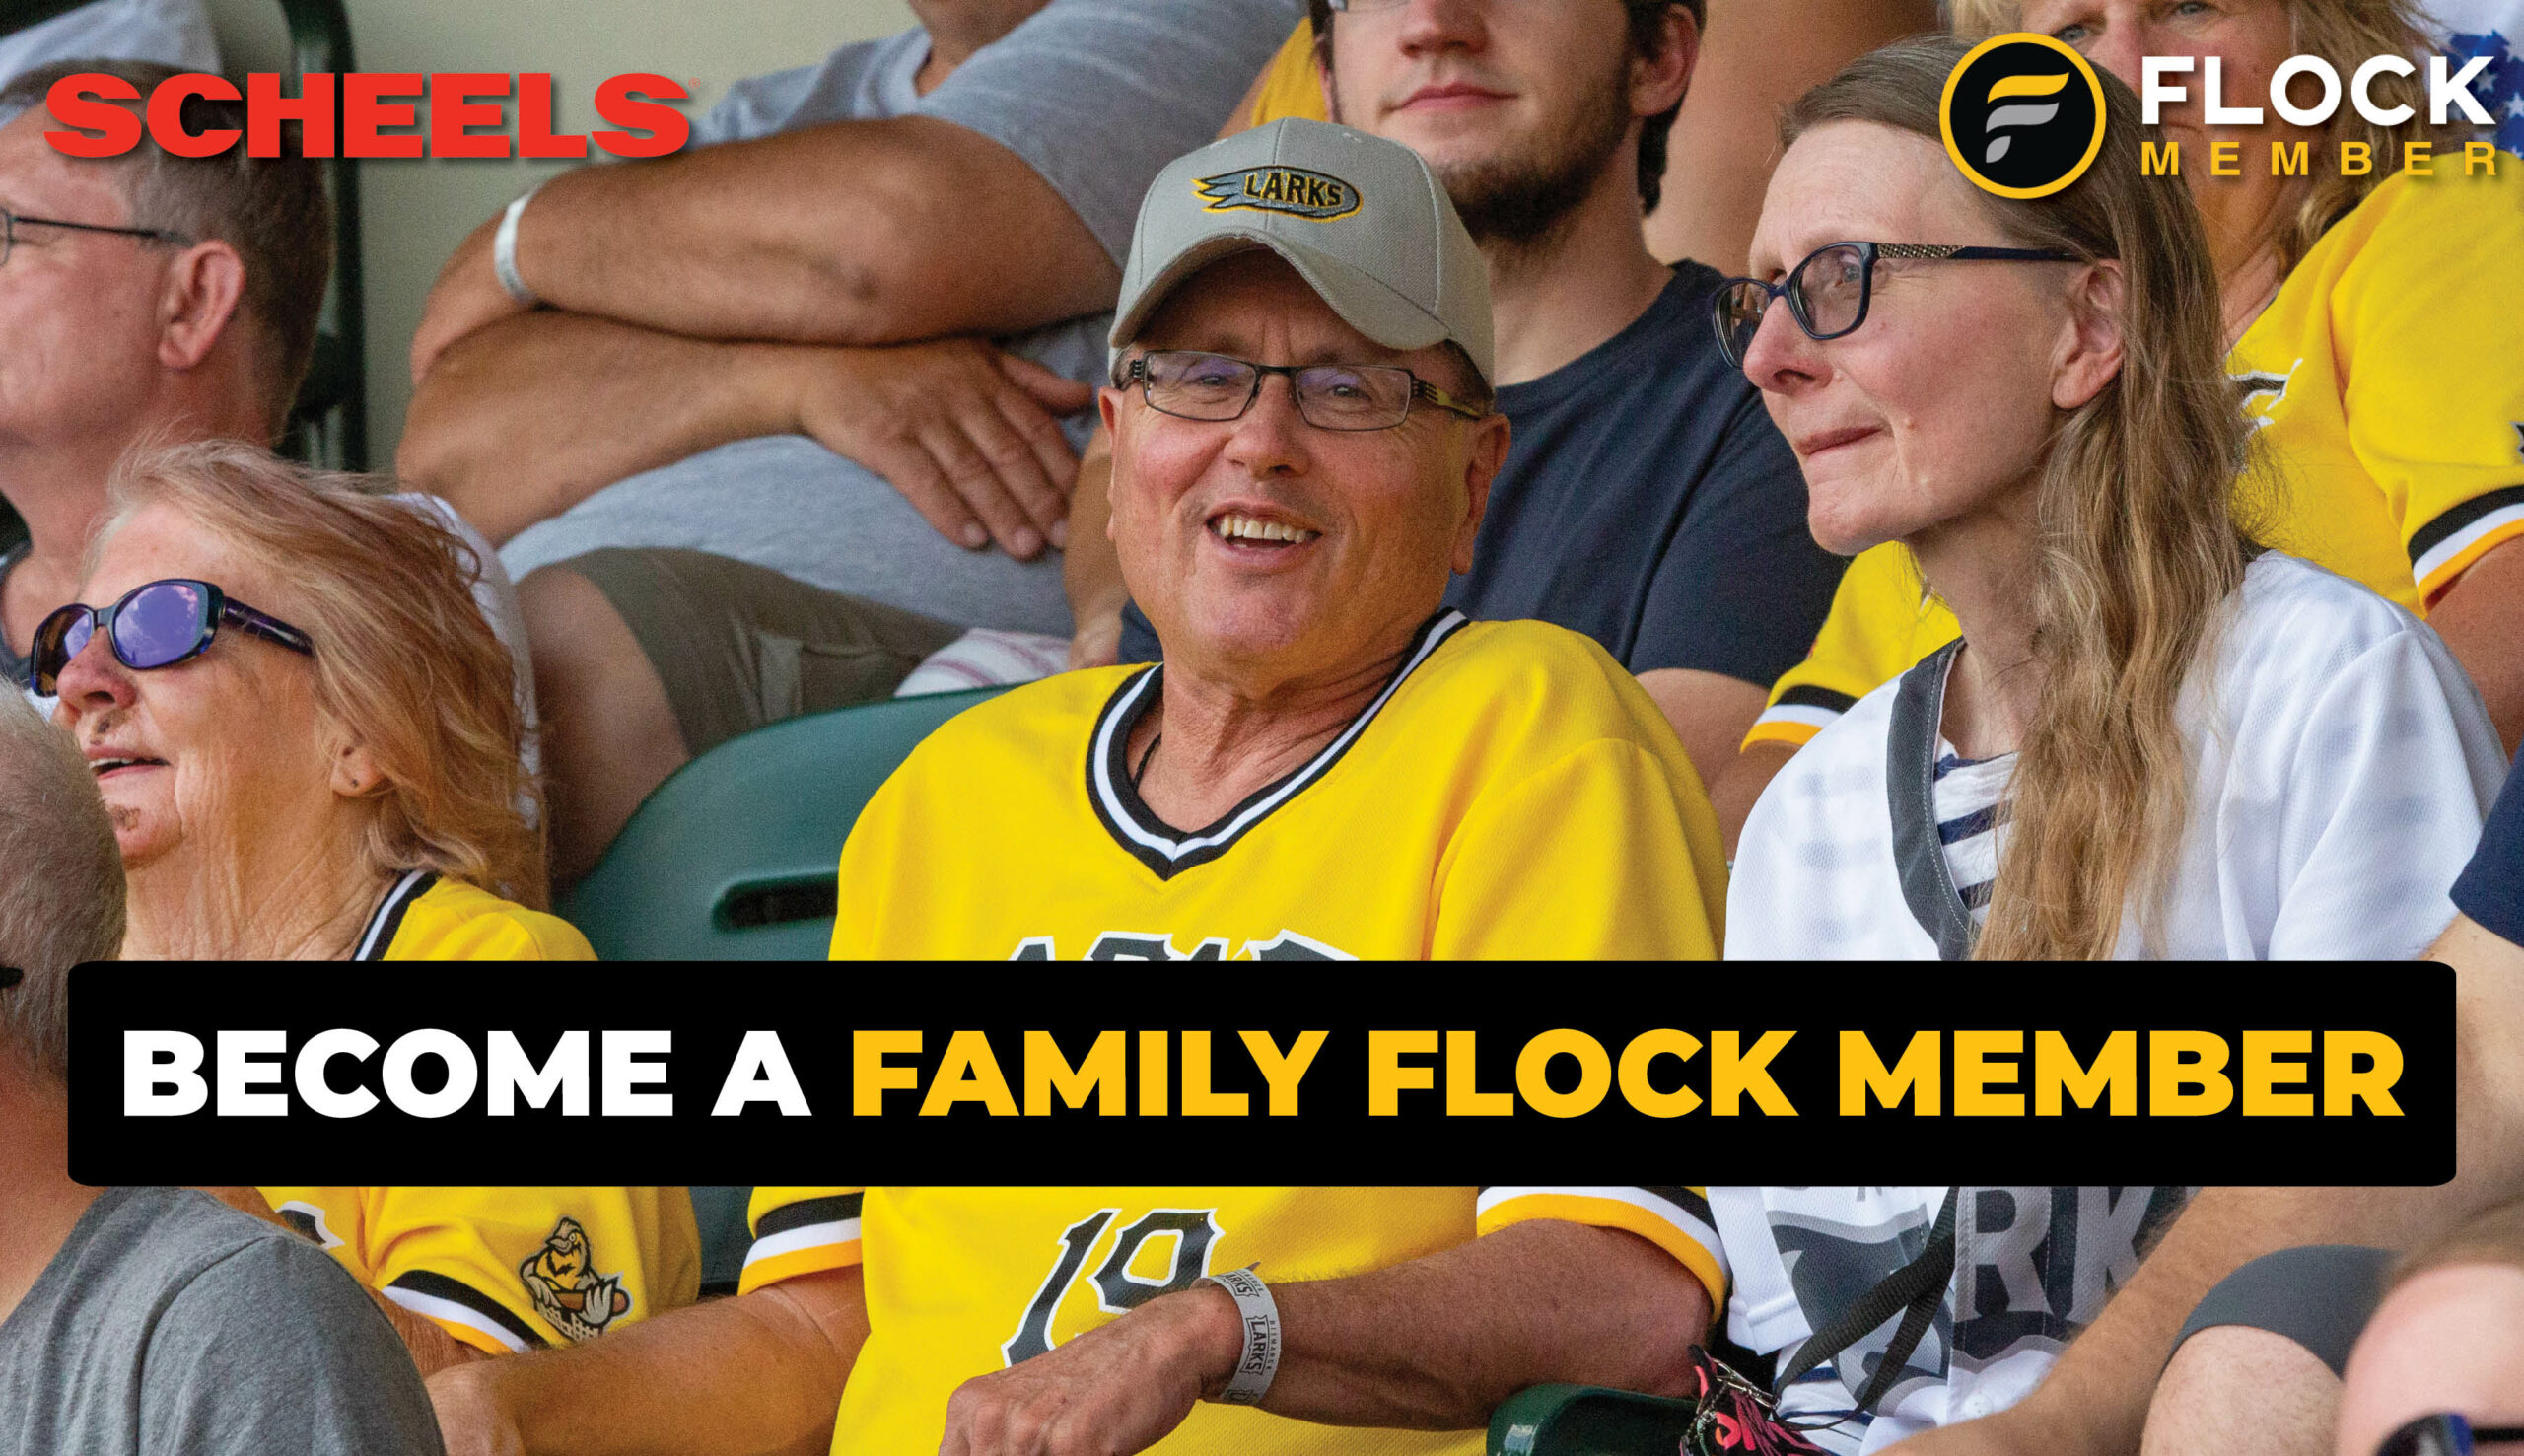 join the flock, larks family flock memberships